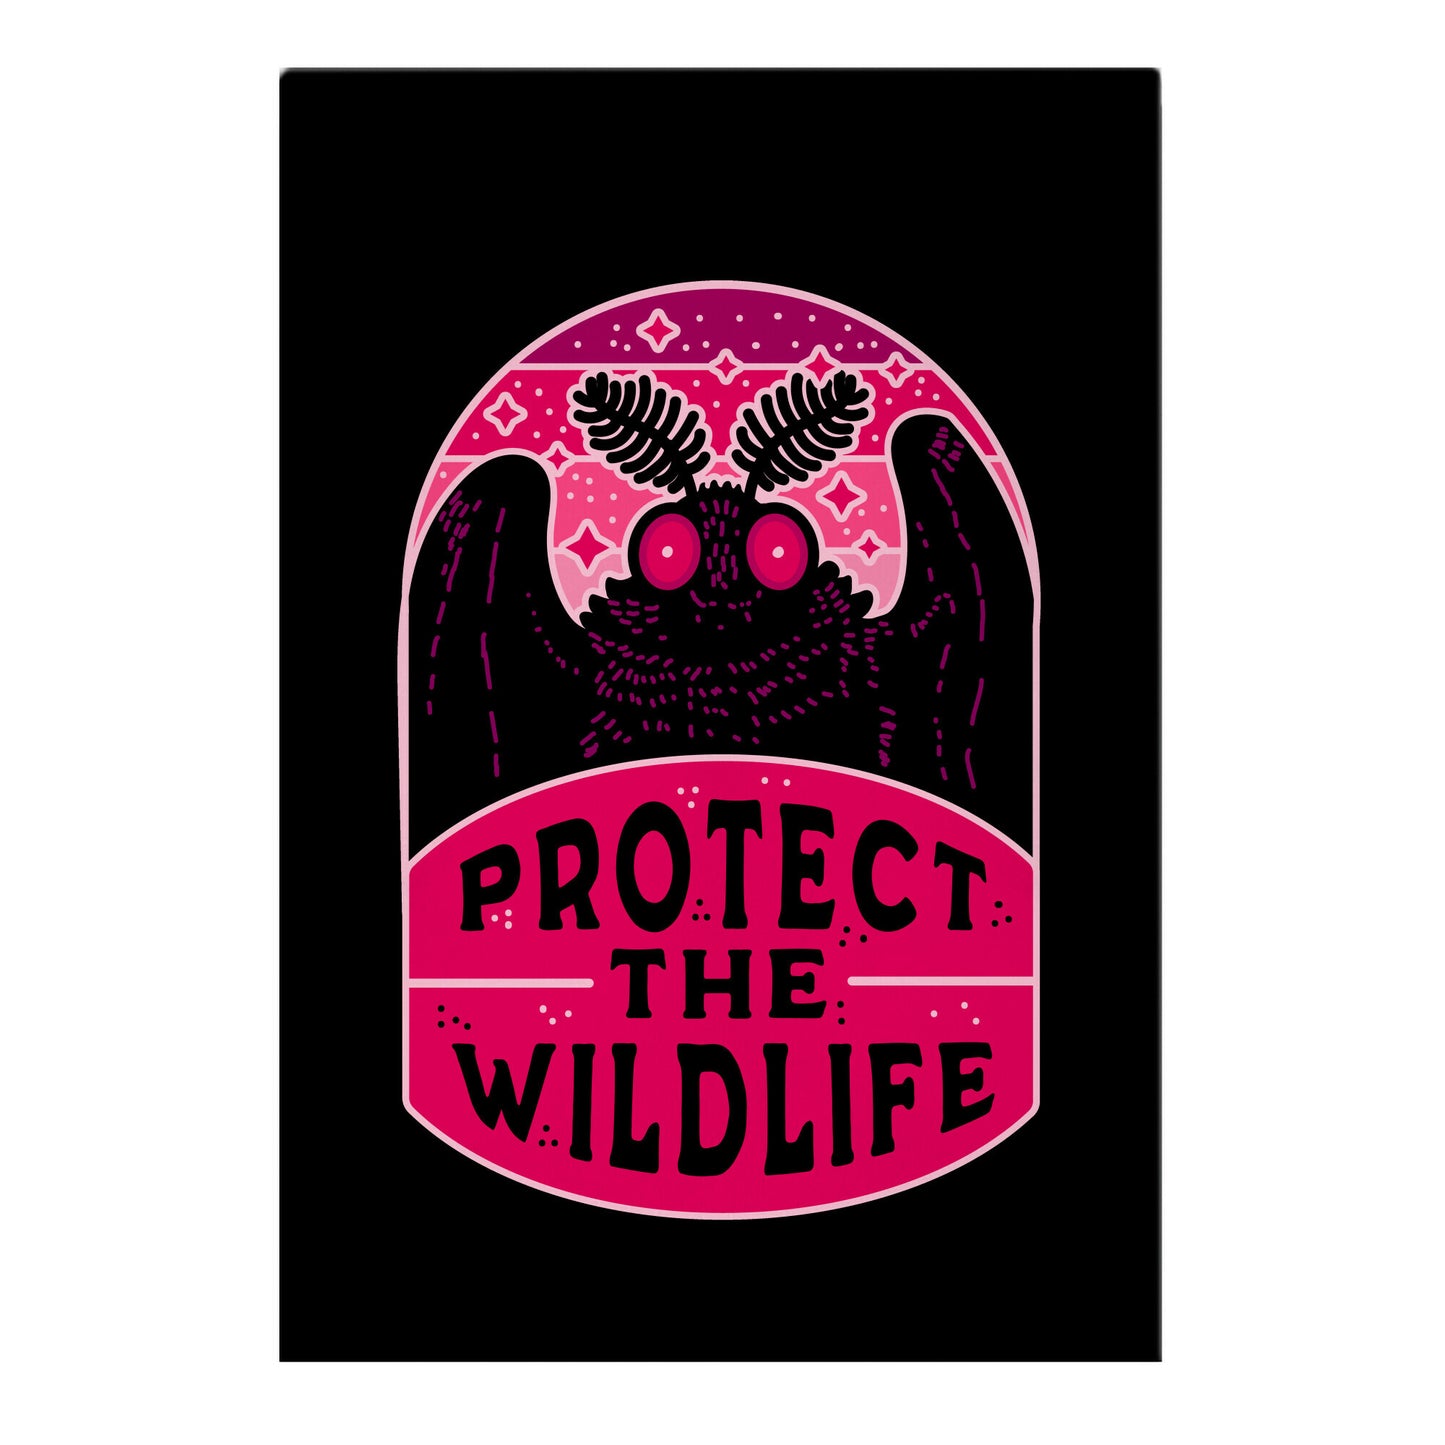 Protect the Wildlife (Mothman) Garden Flag